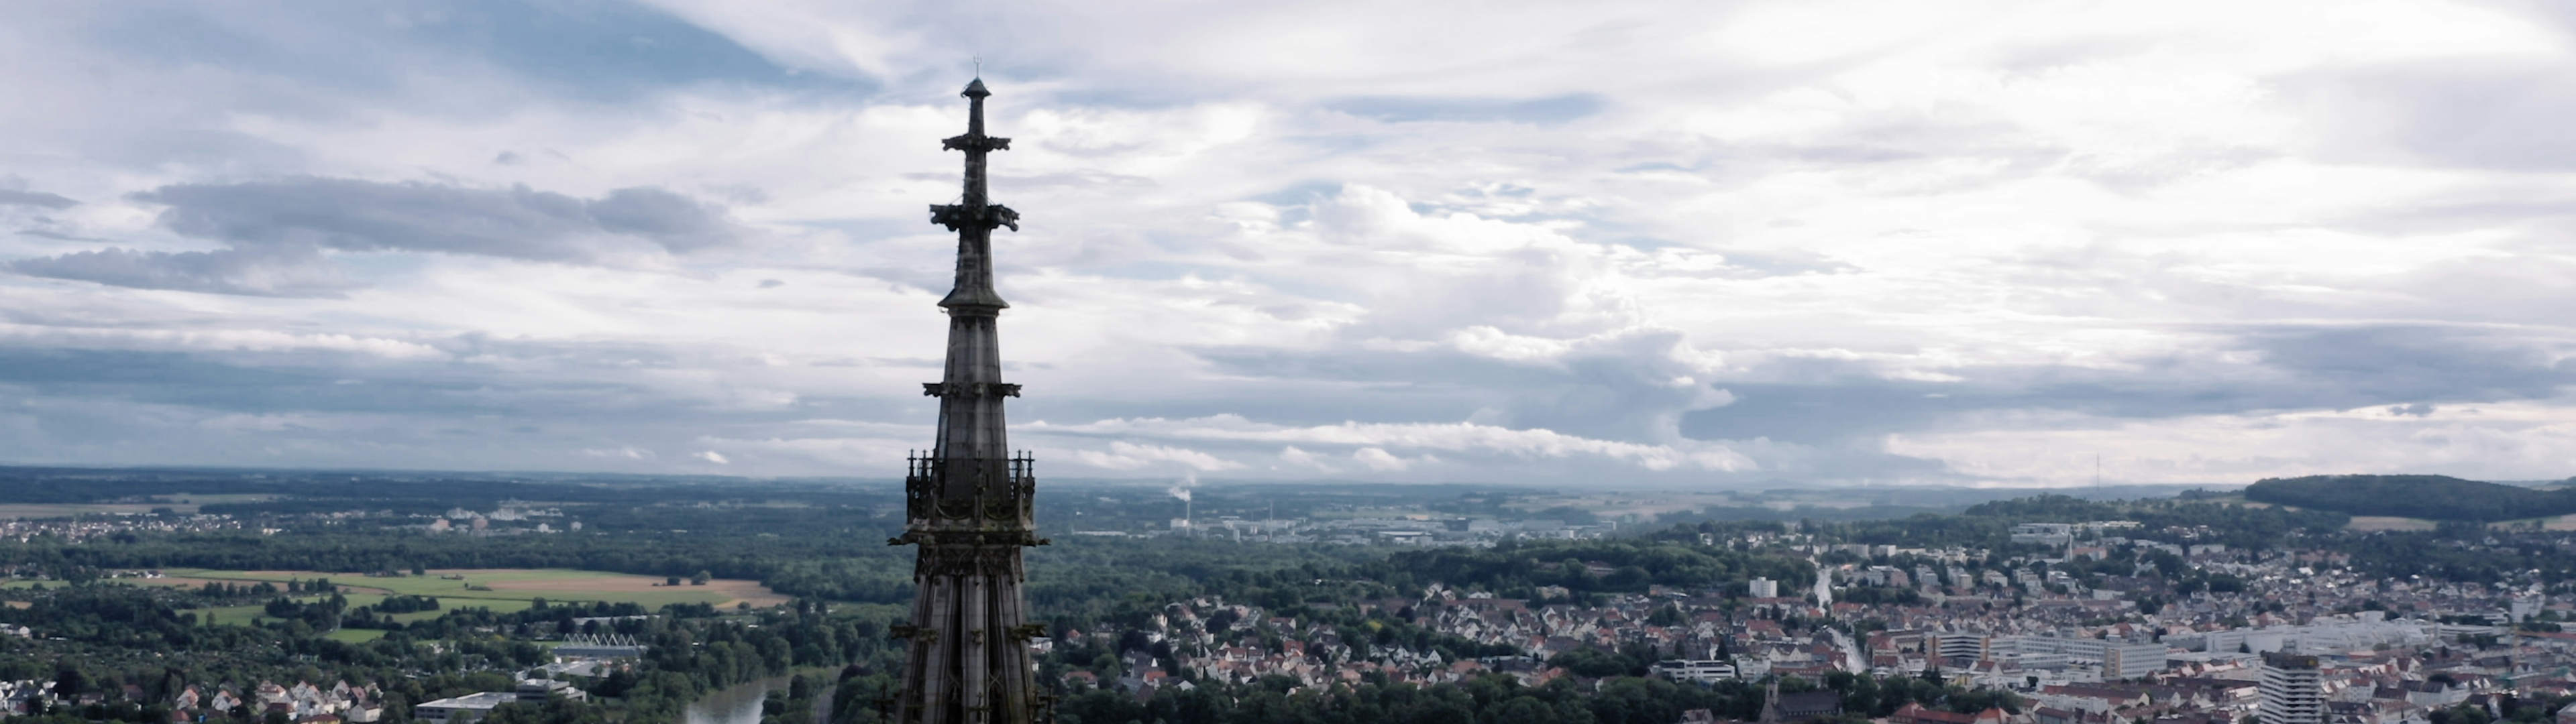 Spitze des Ulmer Münsters vor Landschaft und Himmel